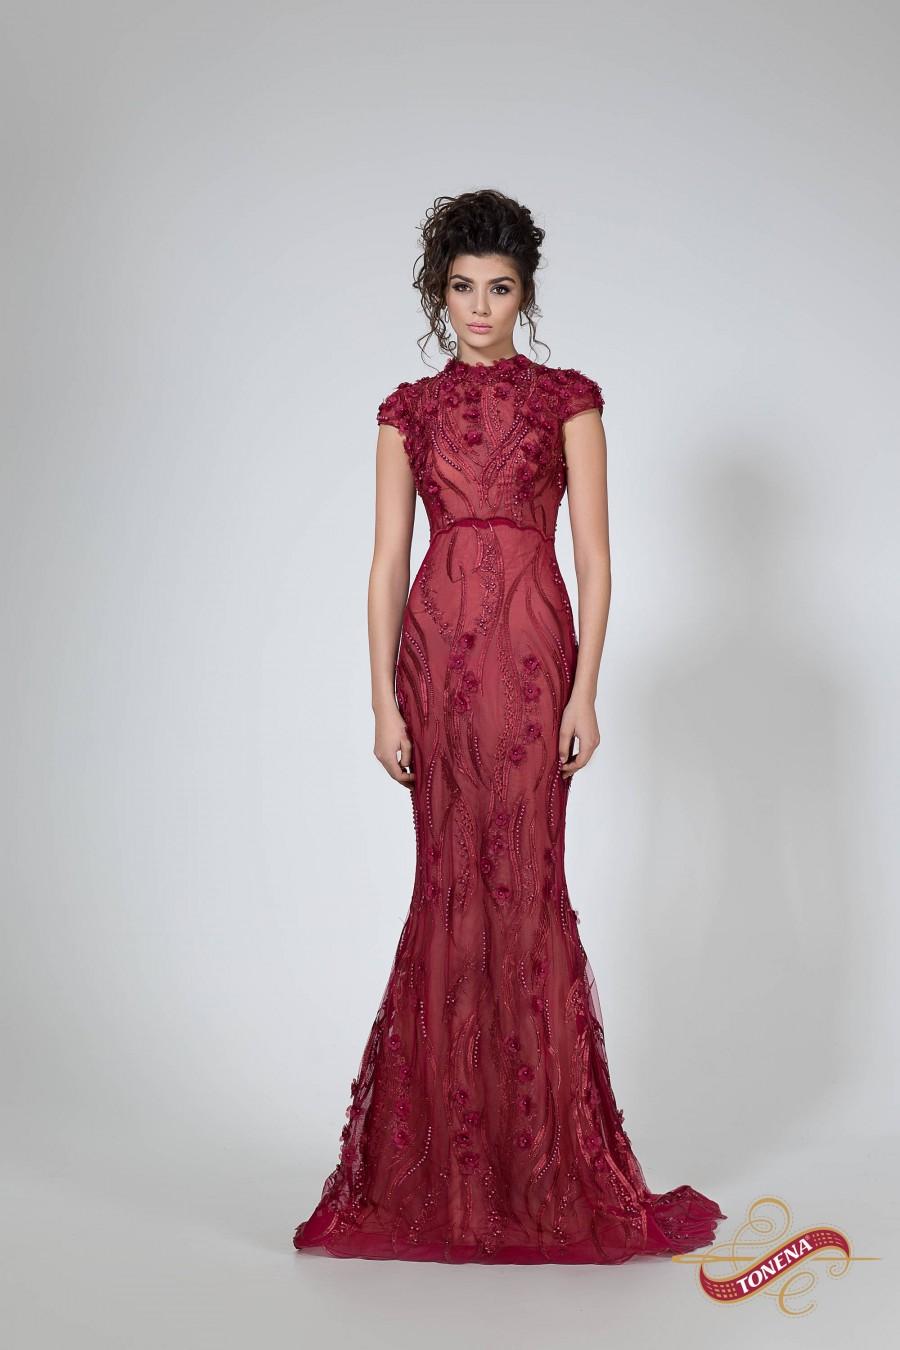 زفاف - Wine red Mother of the bride dress, Long prom formal gown, Sleeveless evening dress, fitted prom dress with beads, Red carpet dress